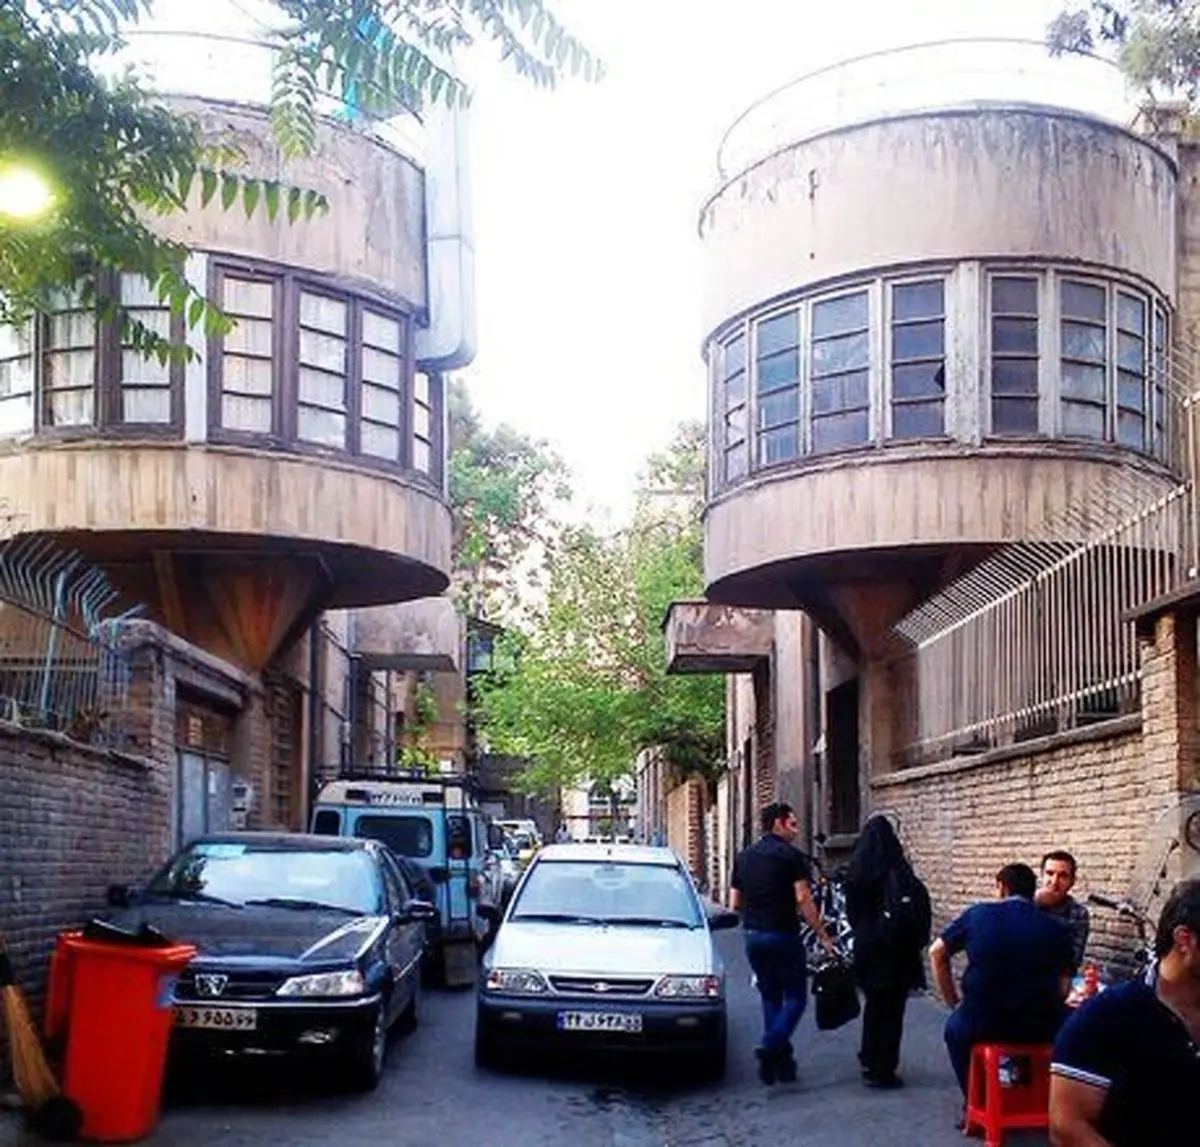 کوچه لولاگر تهران  و یک دنیا زیبایی|خانه های دوقلوی تهران کجاست ؟
